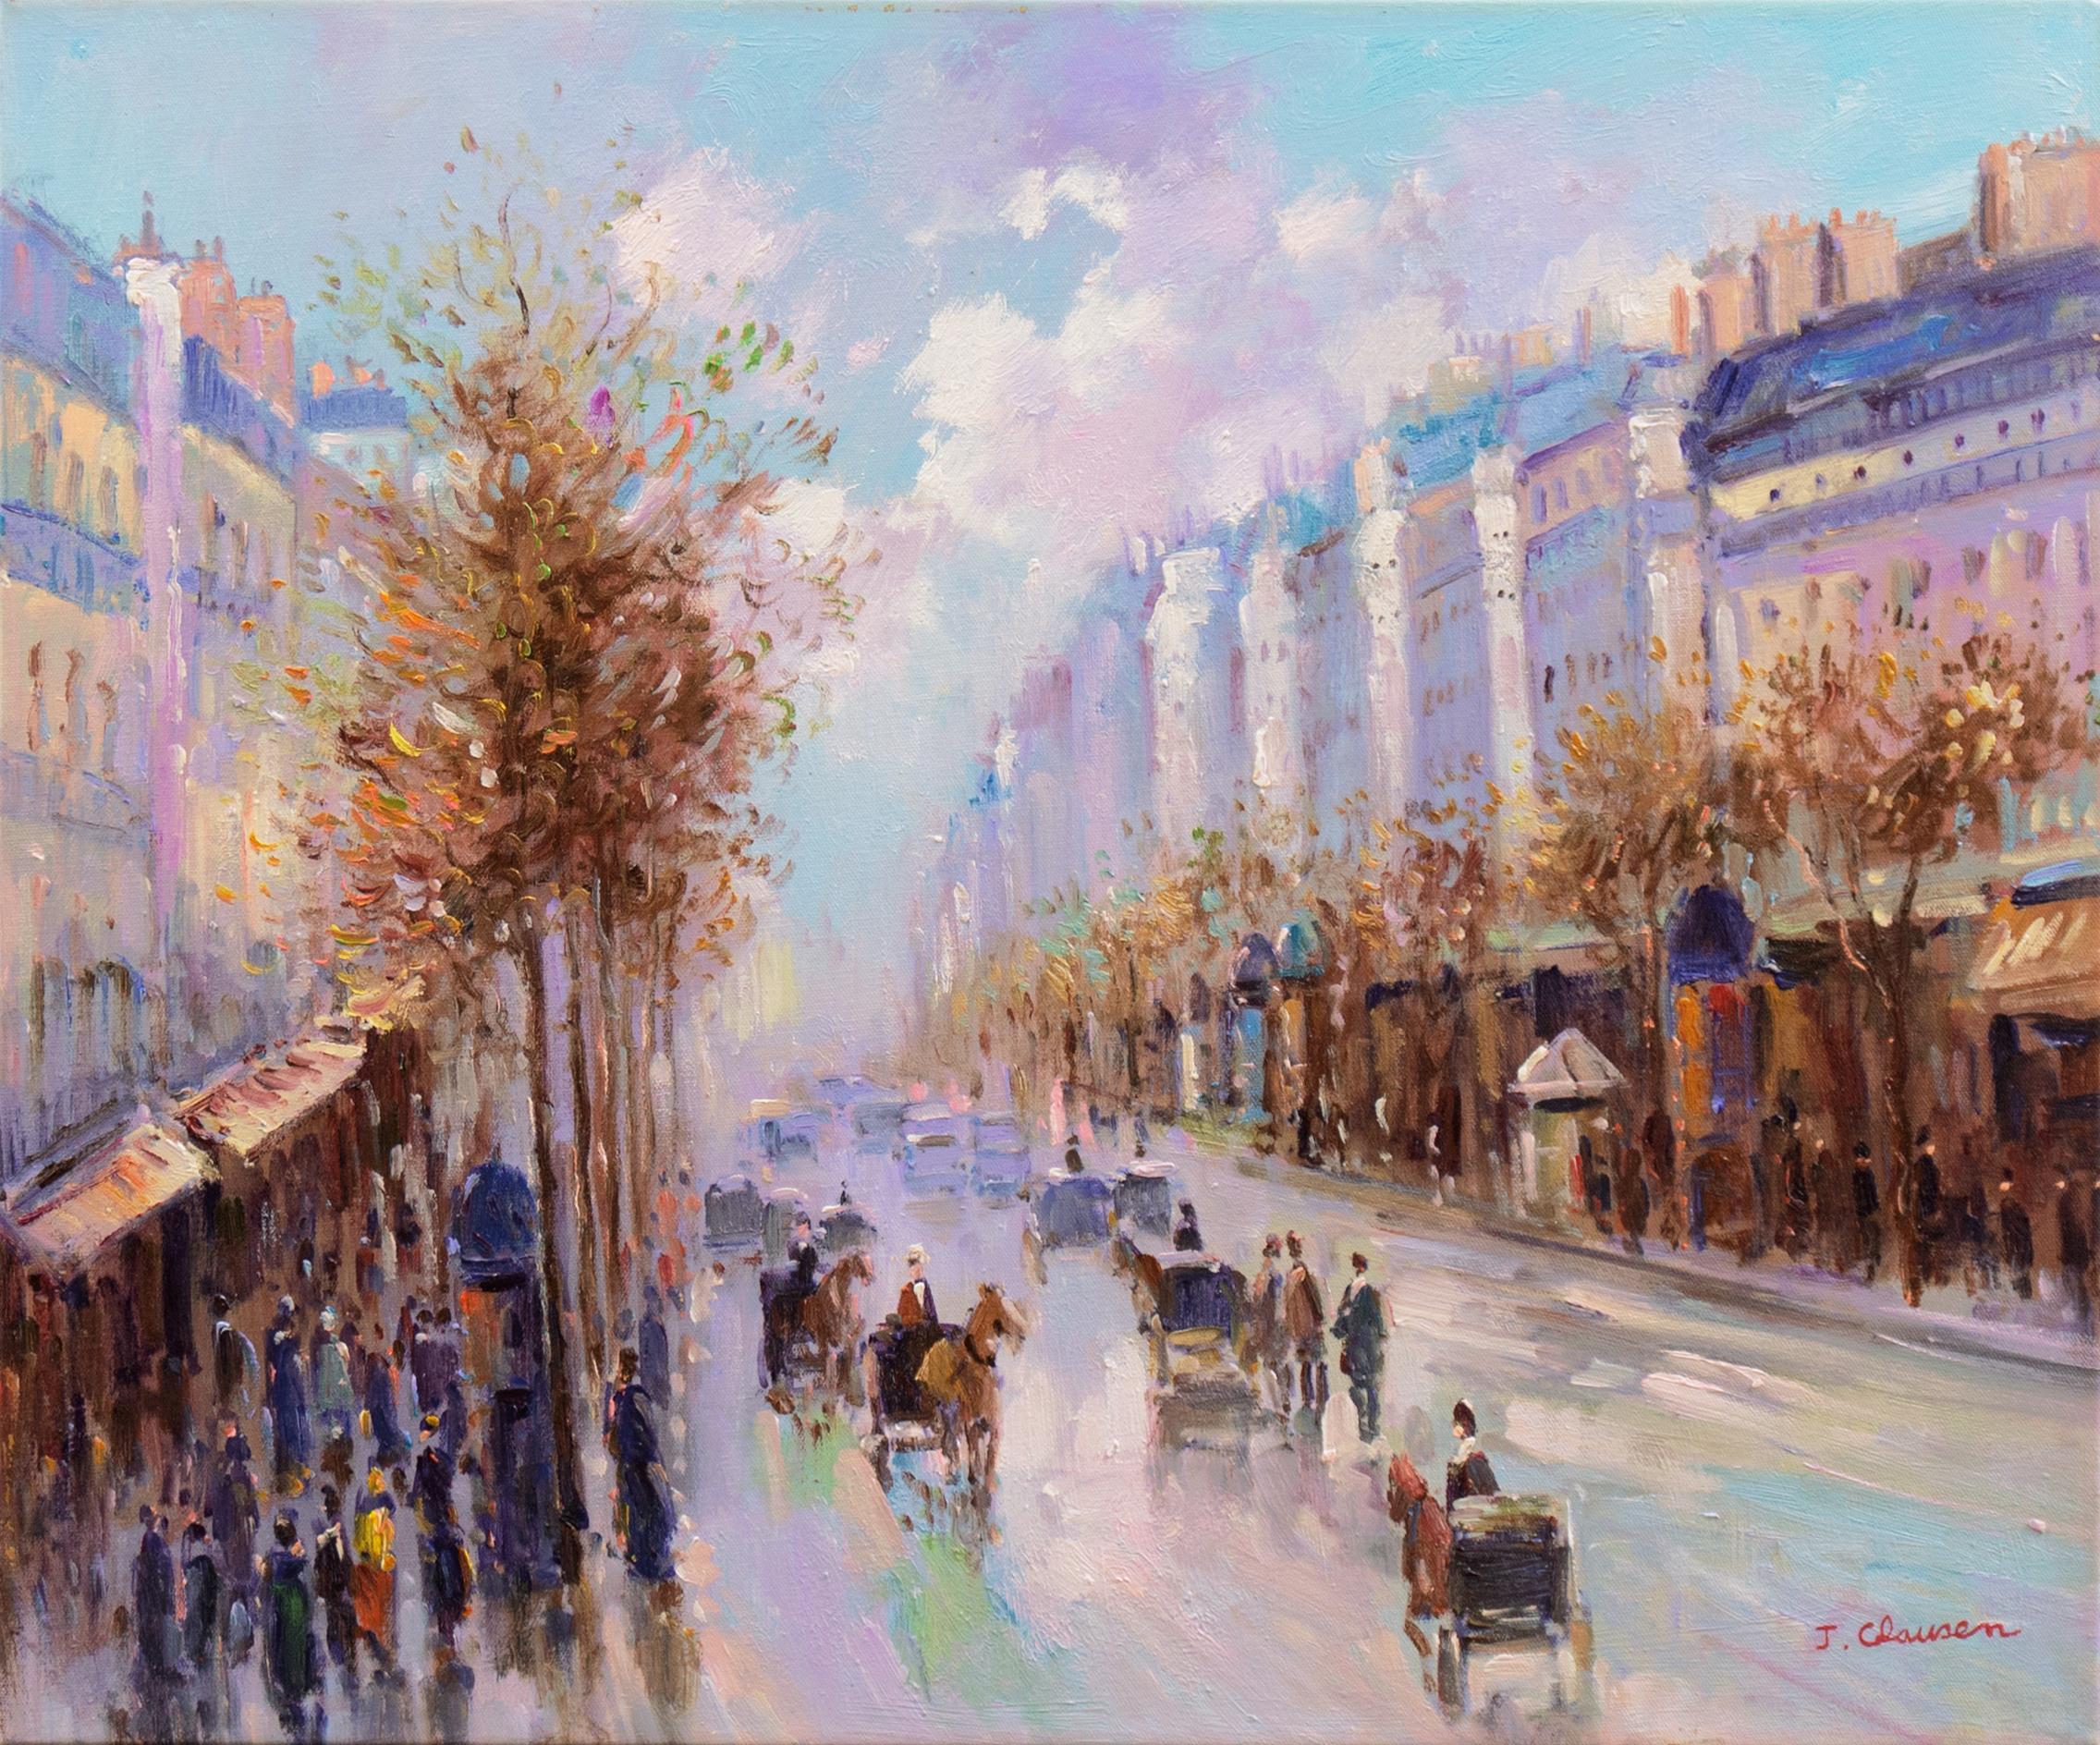  J. Clausen Landscape Painting - 'After the Rain, Paris', French Impressionist Cityscape, Parisian Boulevarde